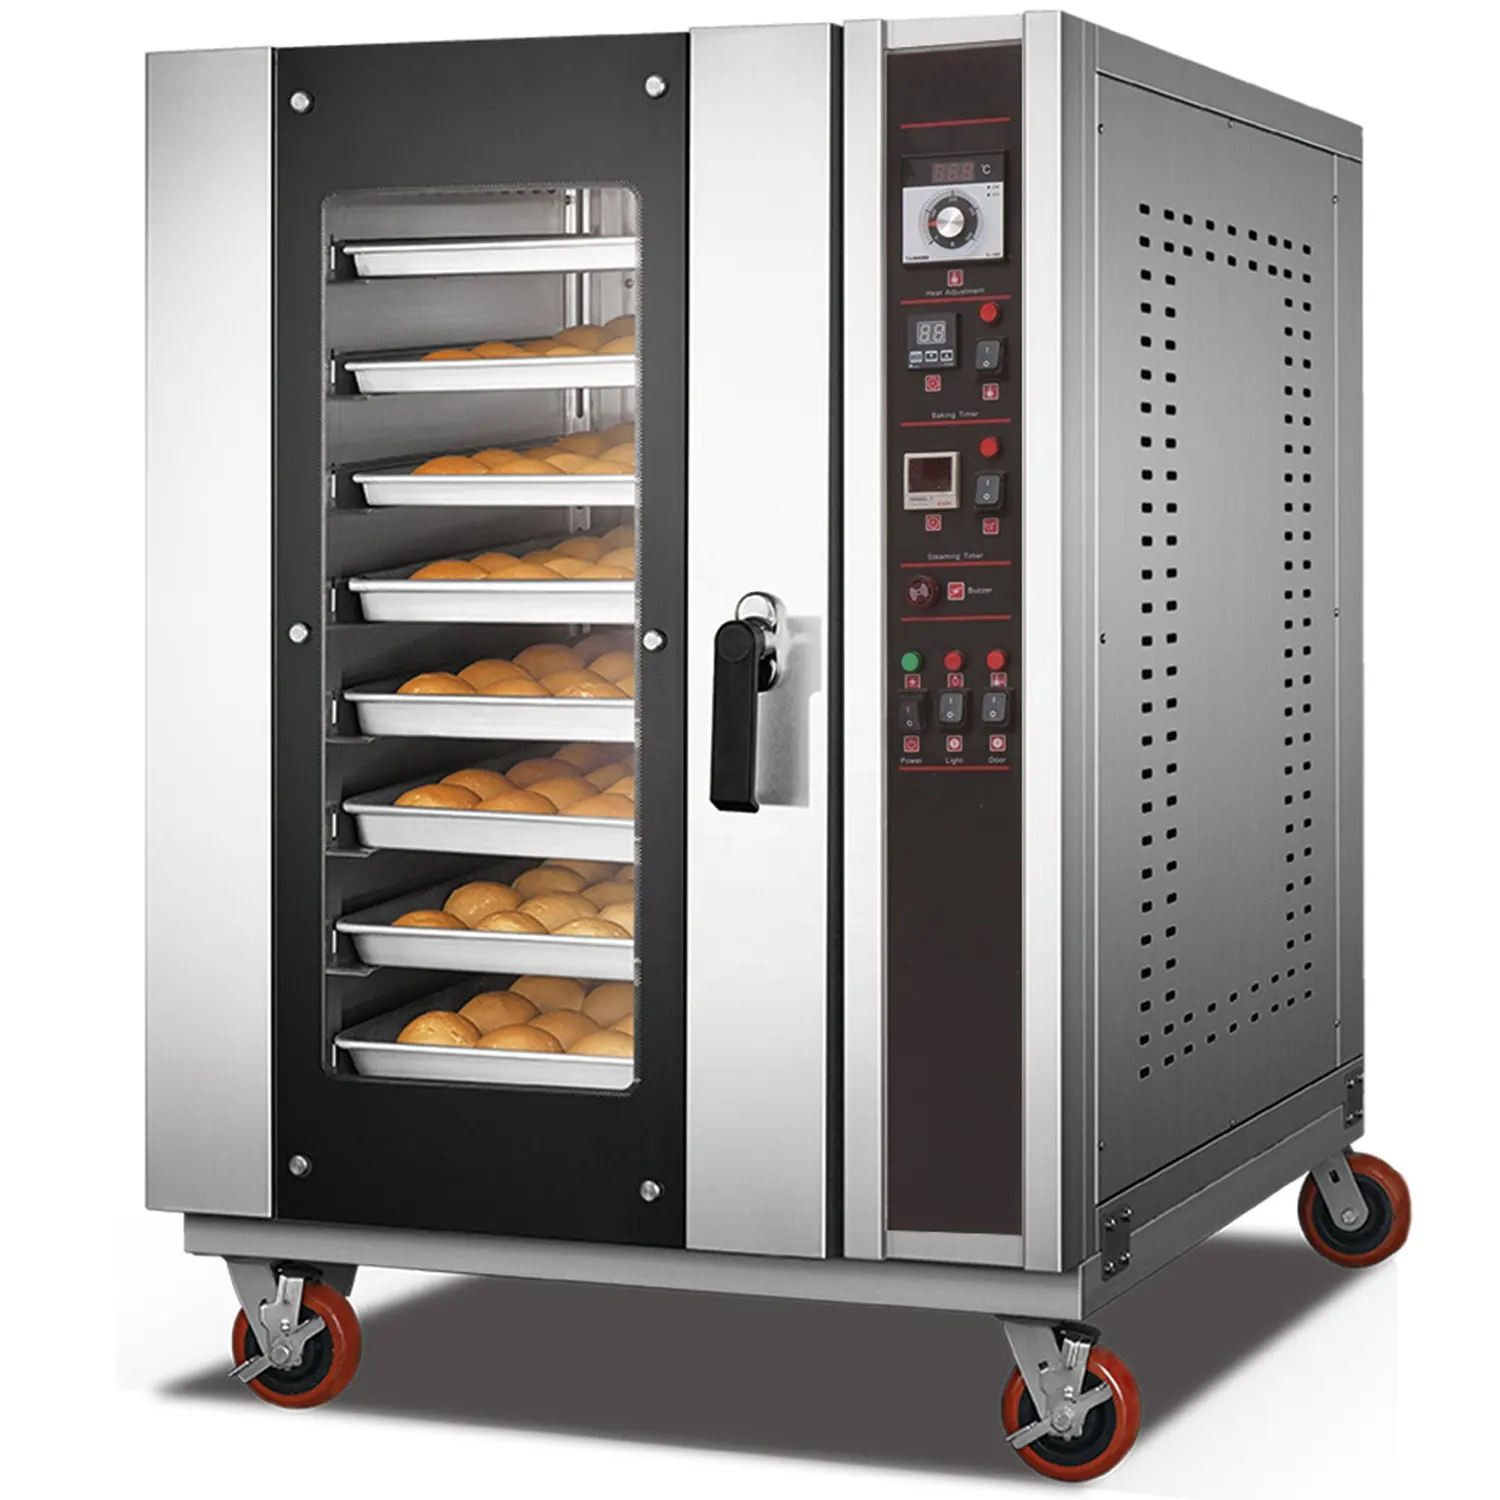 Forno elettrico a convezione in attrezzature da forno commerciale macchina per il pane